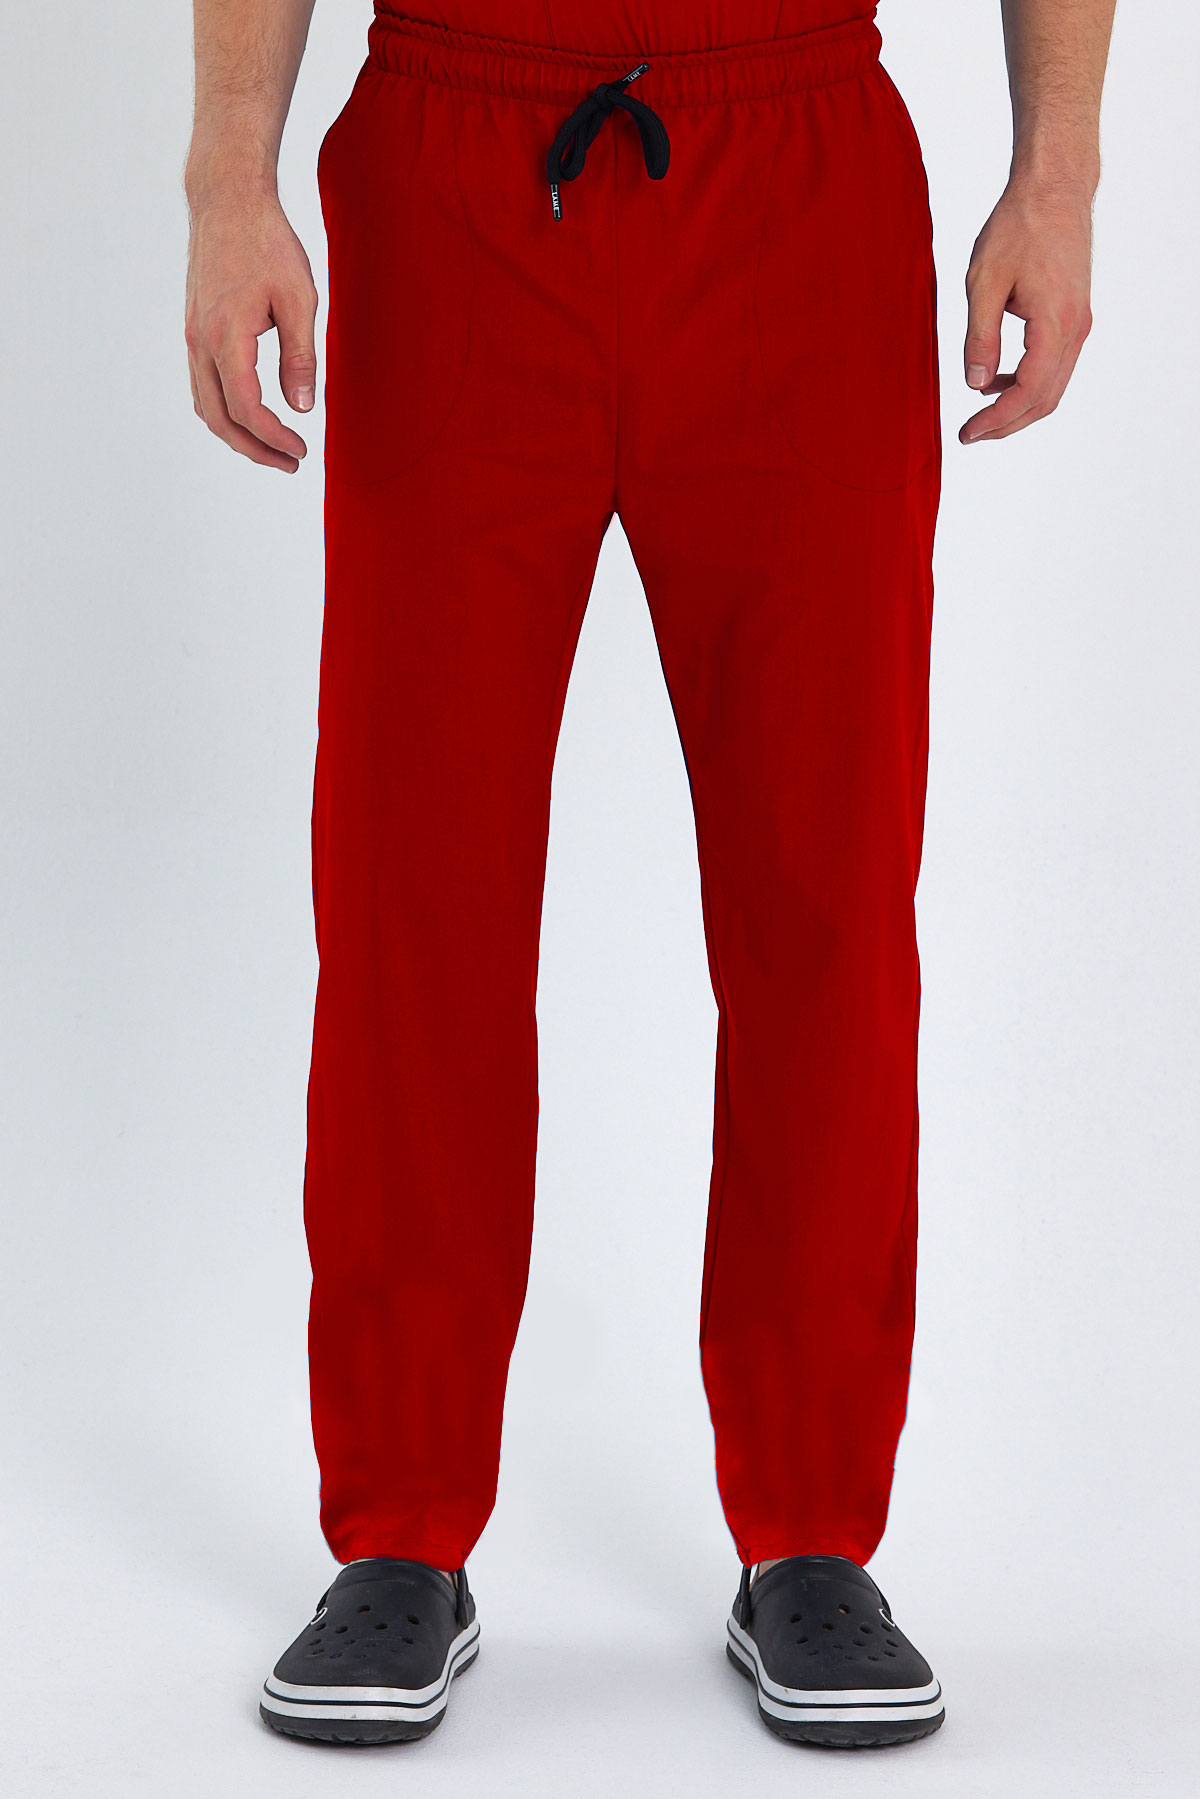 LAME 1009 Basic Likralı Kırmızı Scrubs, Hemşire Forması Klasik Paça Pantolon